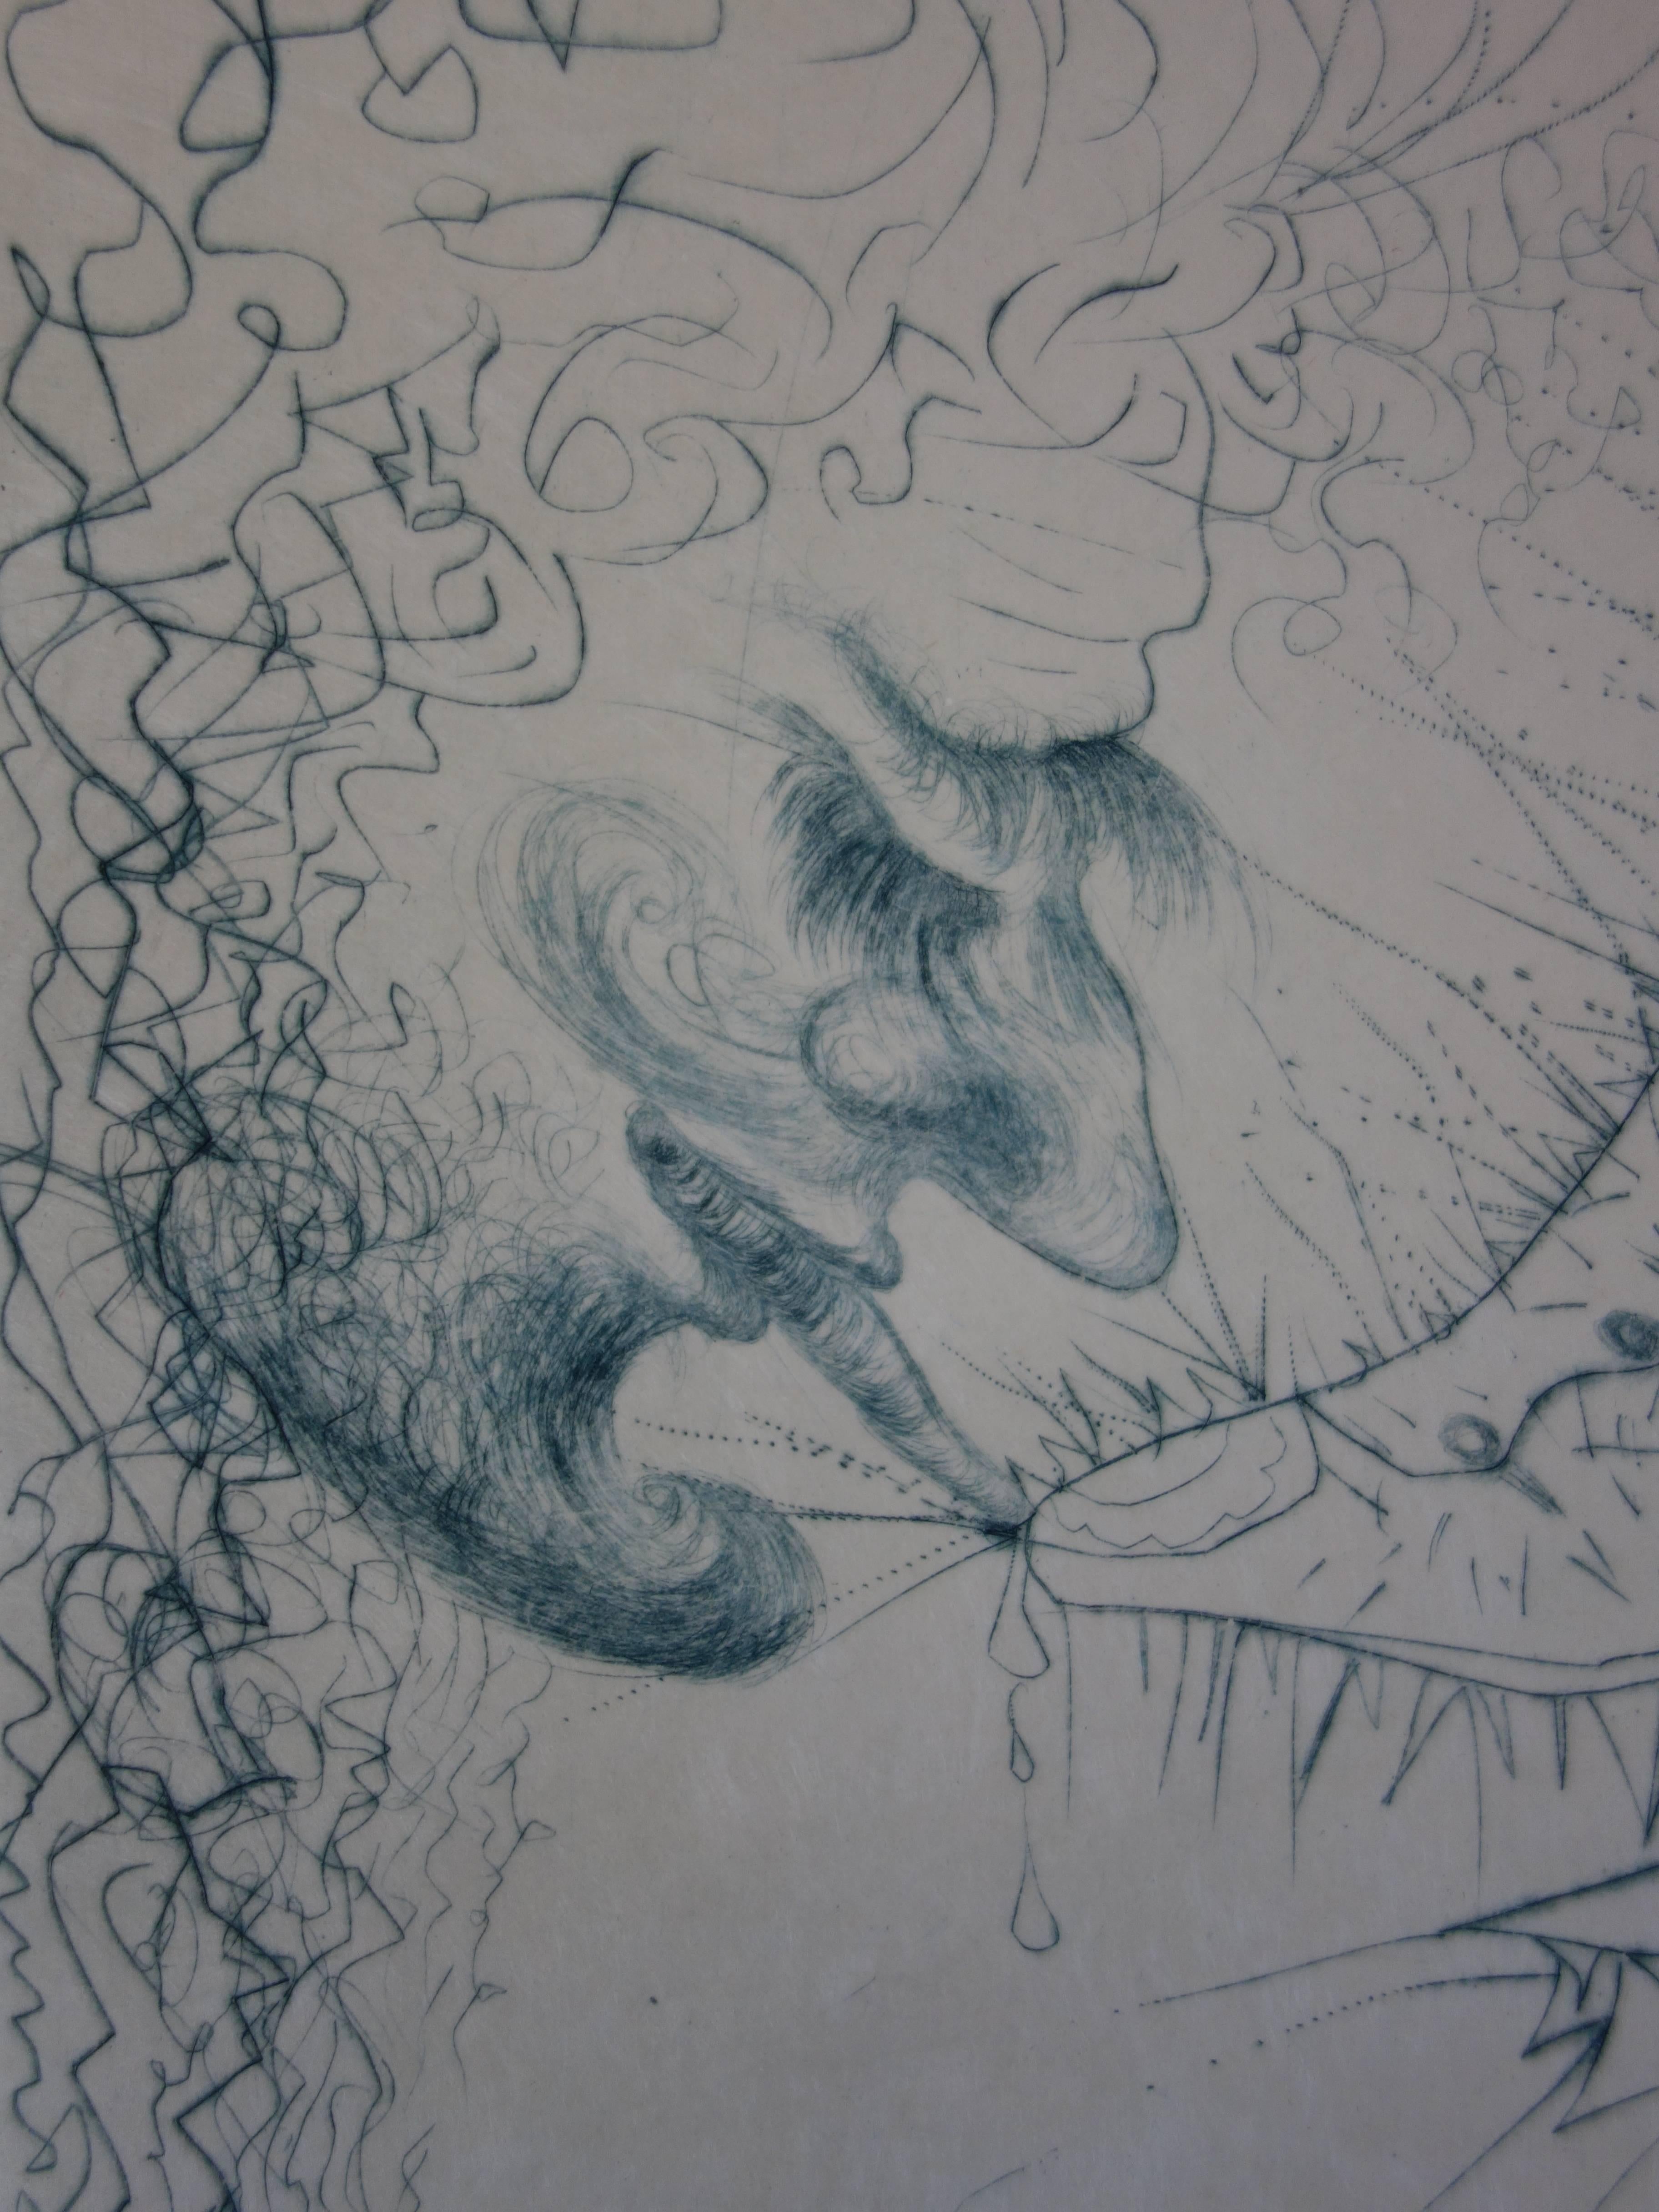 Salvador DALI
Homme embrassant une chaussure, 1969

Gravure originale 
Avec la signature de l'artiste en cachet aveugle
Épreuve rare en gry bleu
Sur papier japonais 38 x 28 cm (c. 15 x 11in)

Références :
- Catalogue raisonné Field #68-6D
-